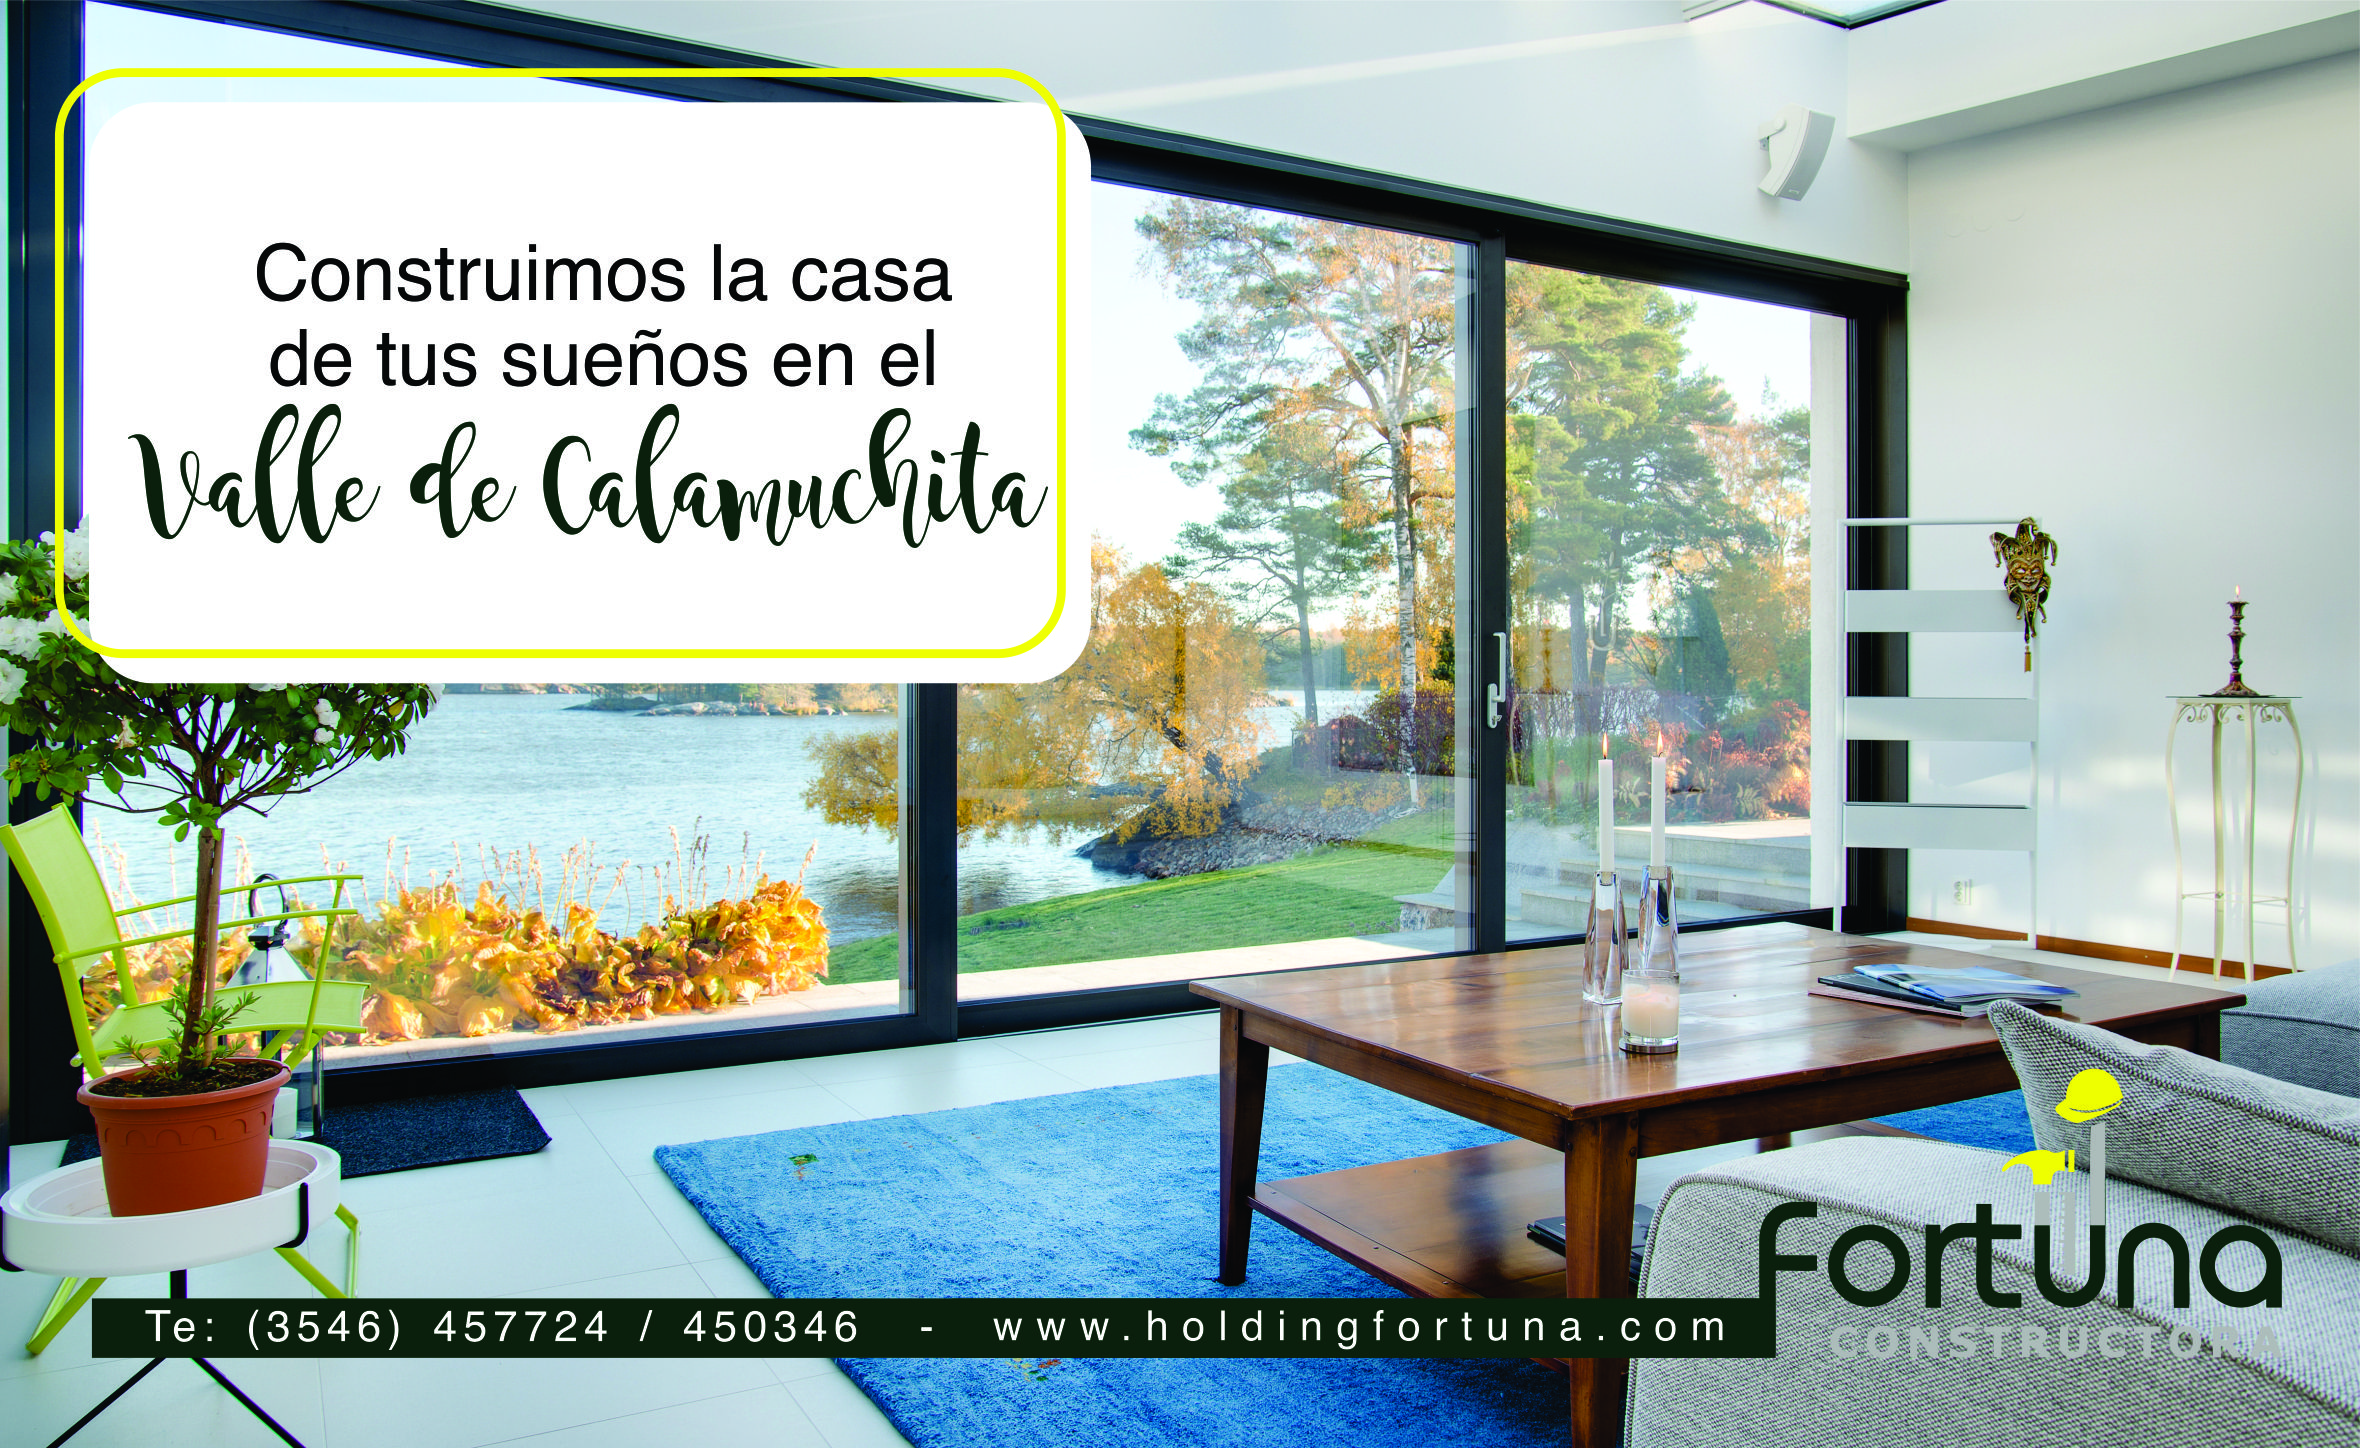 FortunaConstructora-Construccion-Constructora-ValleDeCalamuchita-VillaGeneralBelgrano-HoldingFortuna